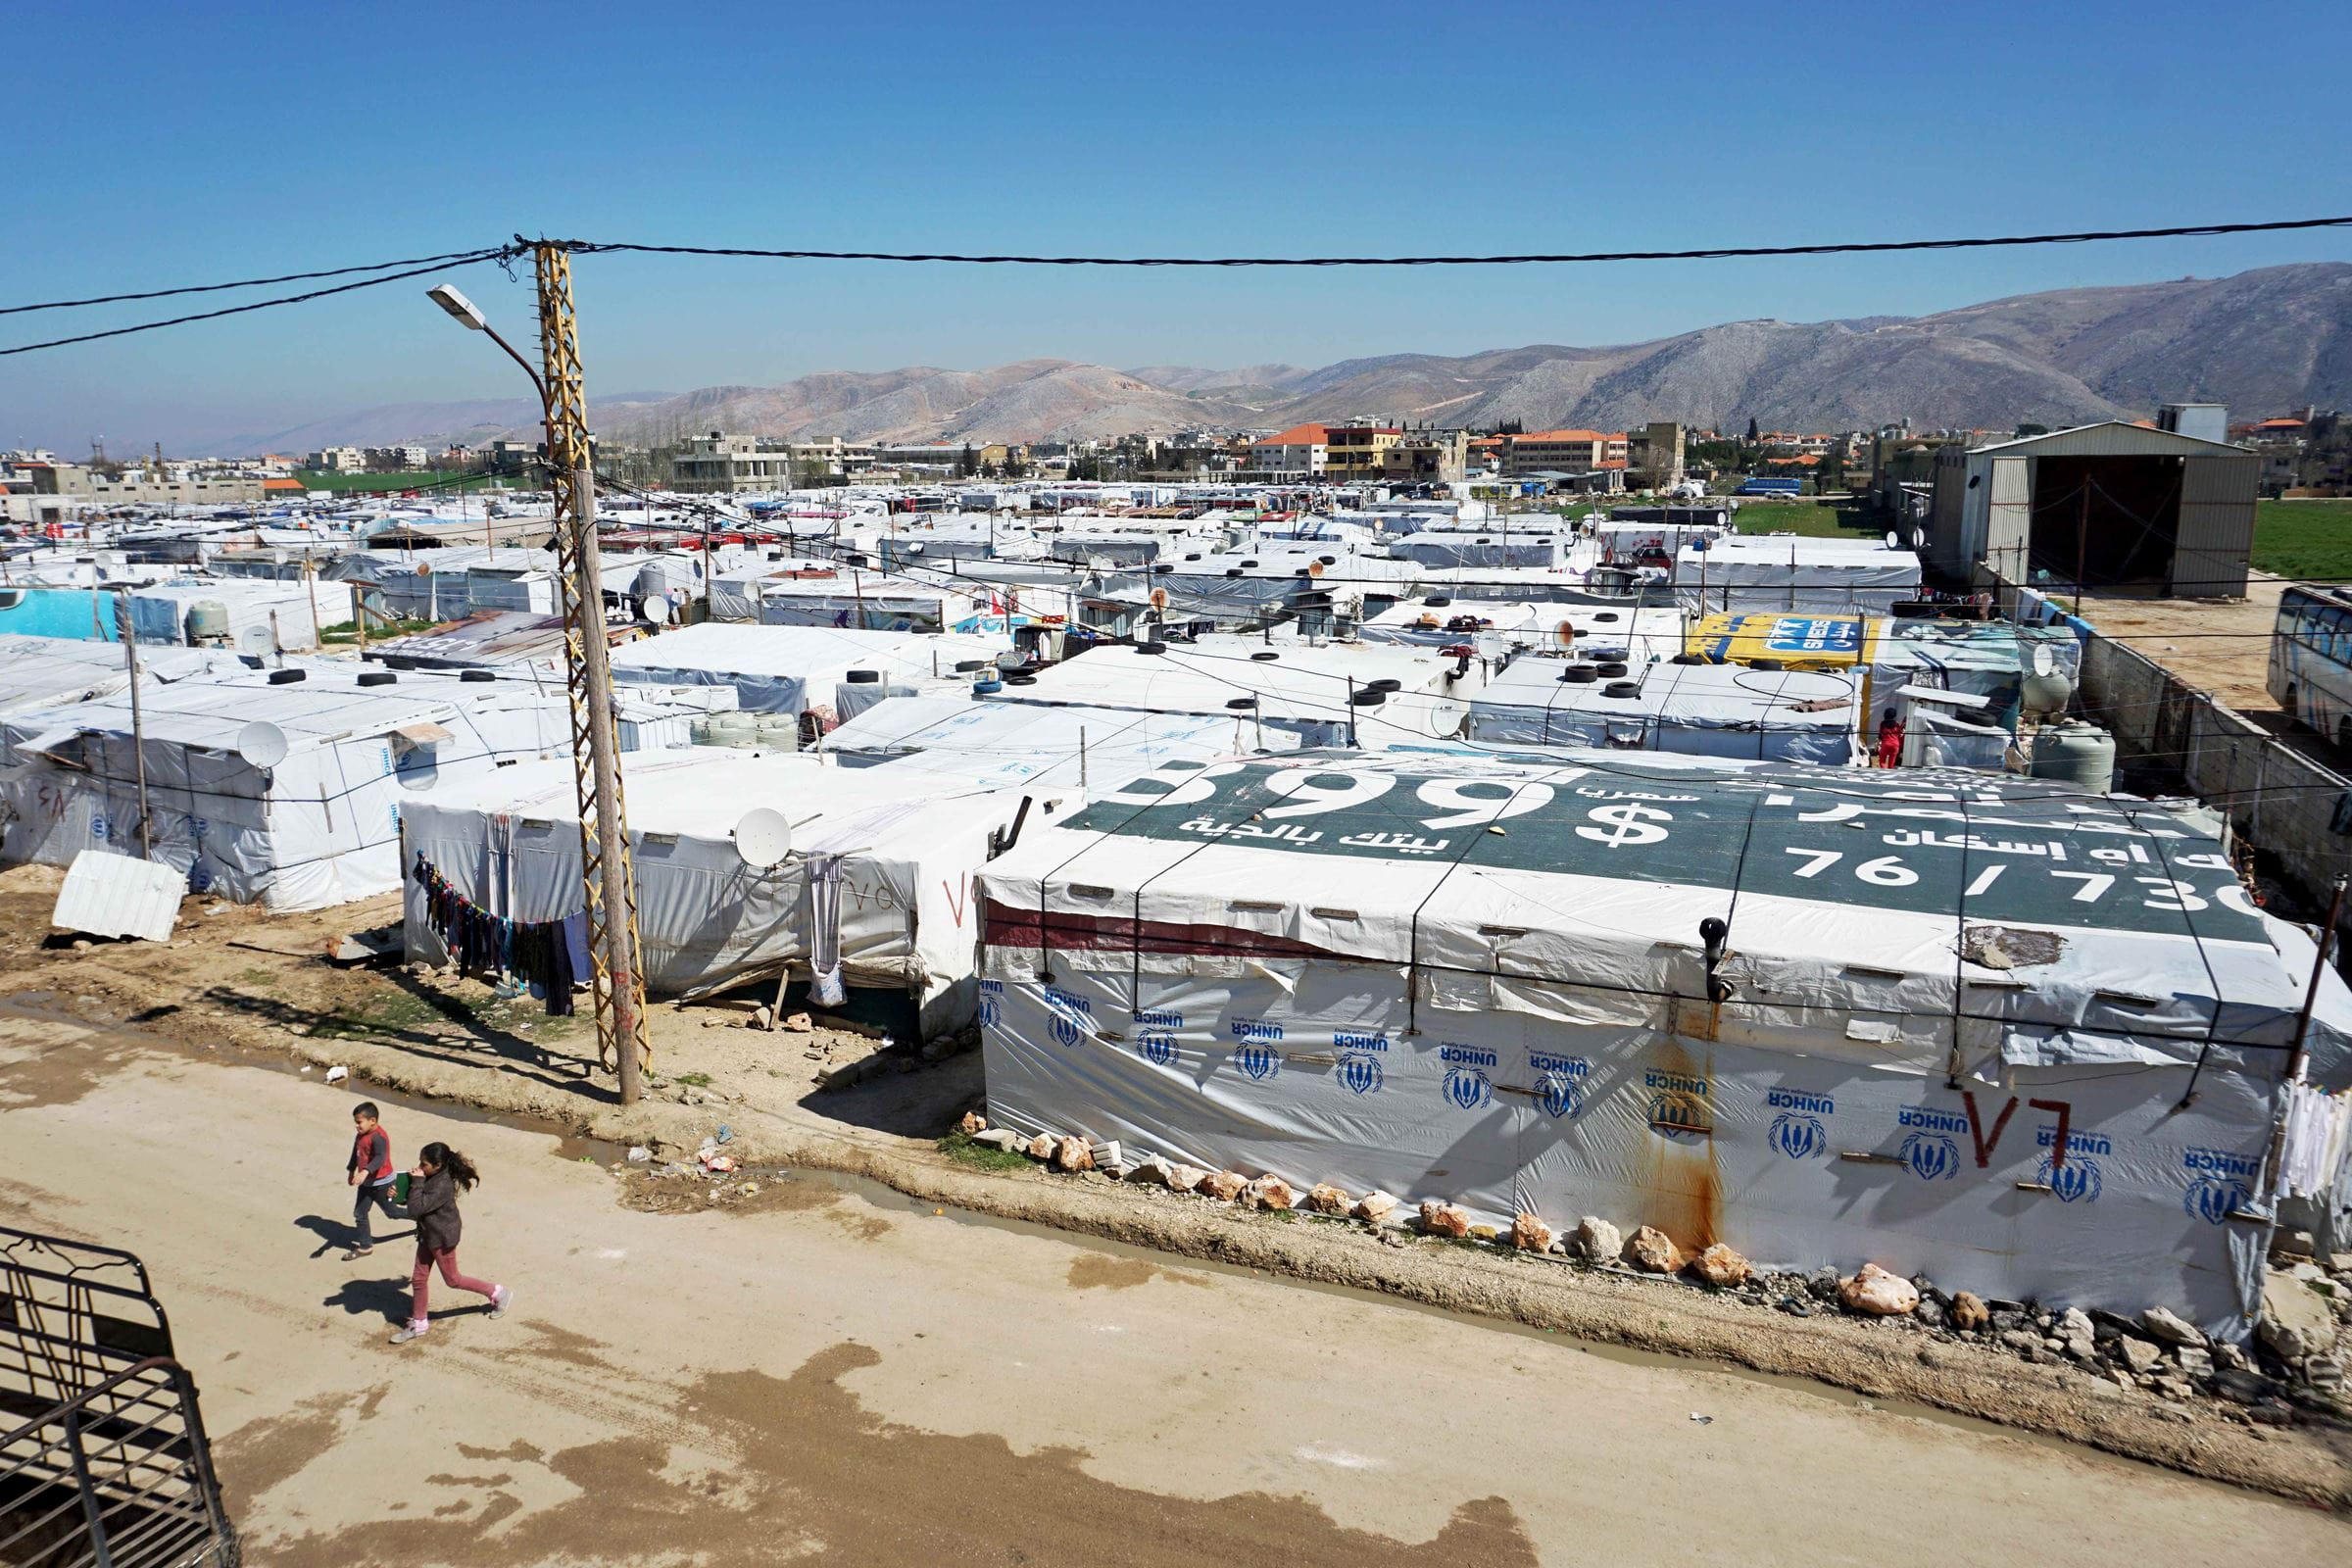 Reportage Libanon "Das Wichtigste ist eine Schule im Camp"; Foto: Blick von oben auf die Zelte des Camps (Quelle: Lorenz Toepperwien / Kindernothilfe)